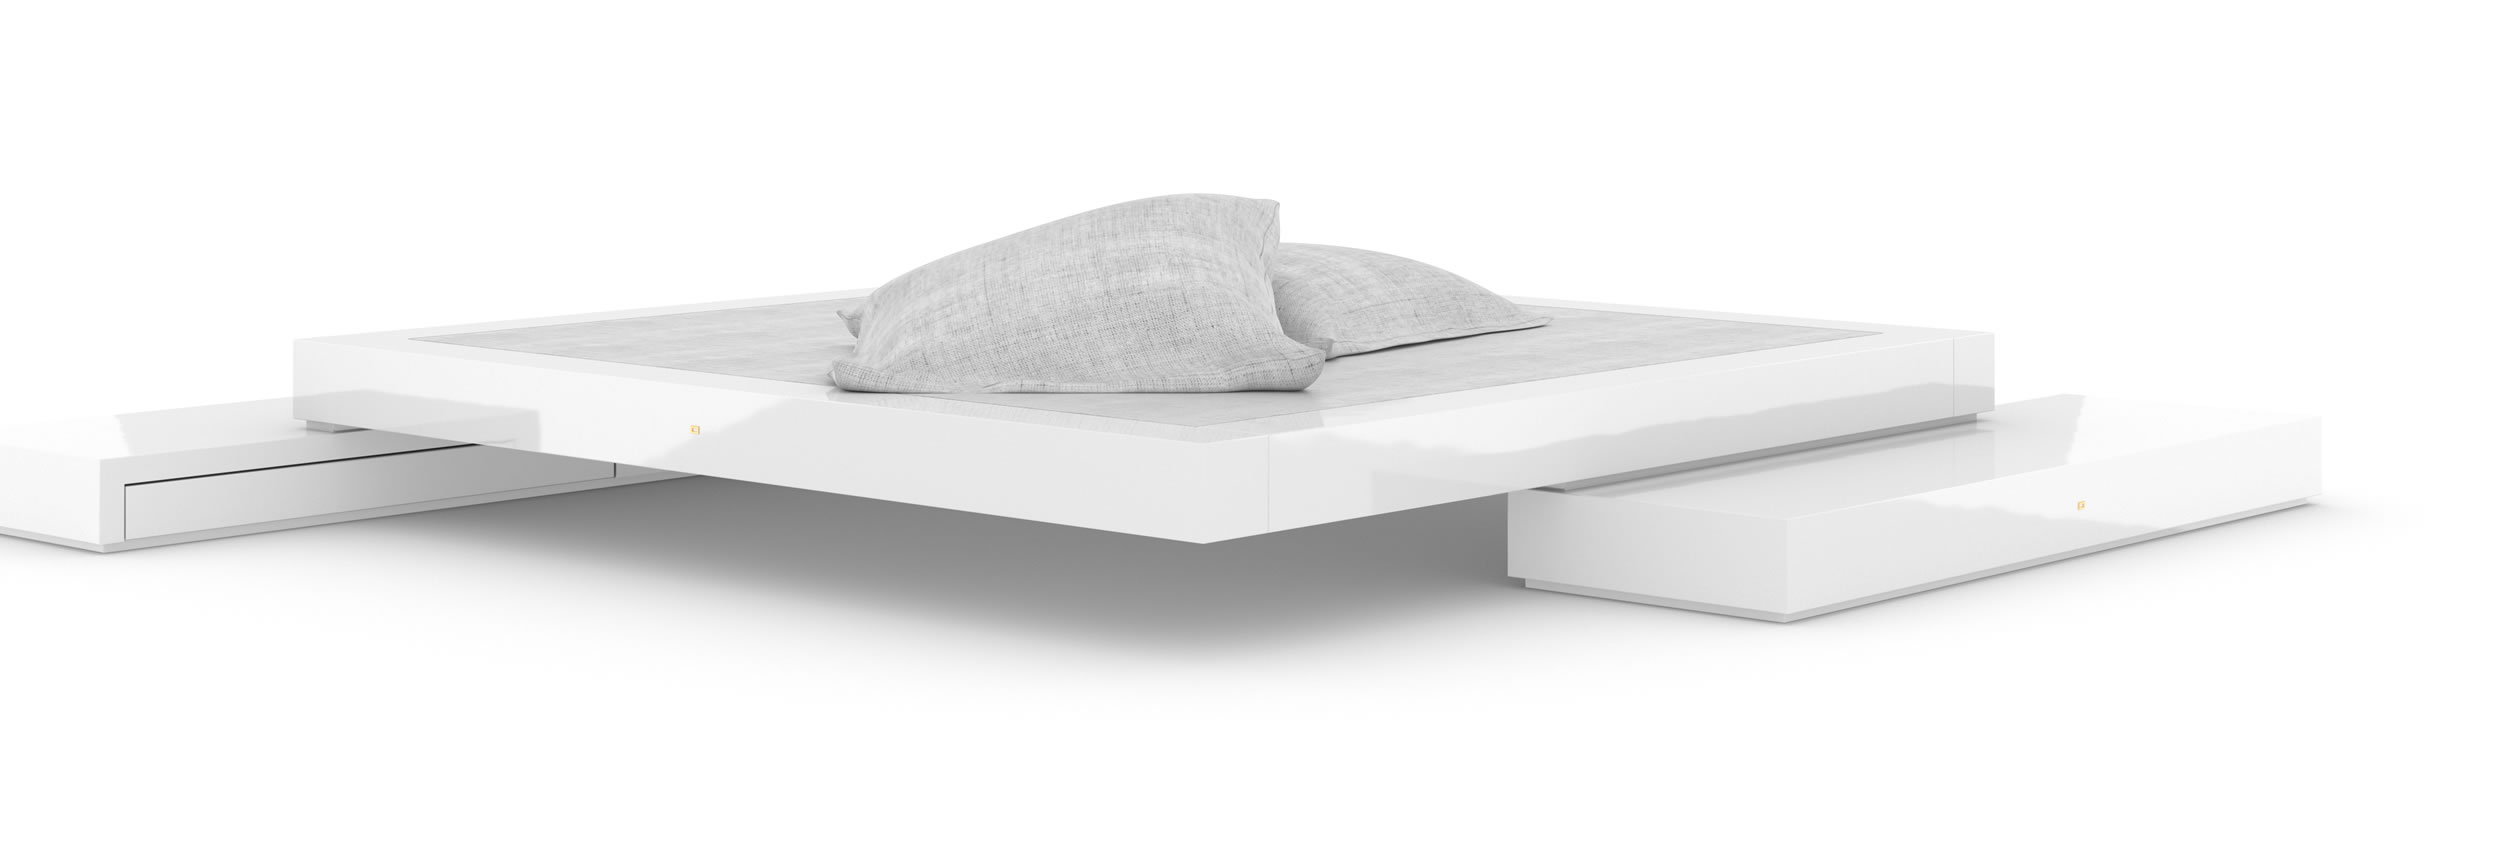 Design Bed Sideboards White Glossy Premium Handcrafted Design Elegant InteriorFELIX SCHWAKE